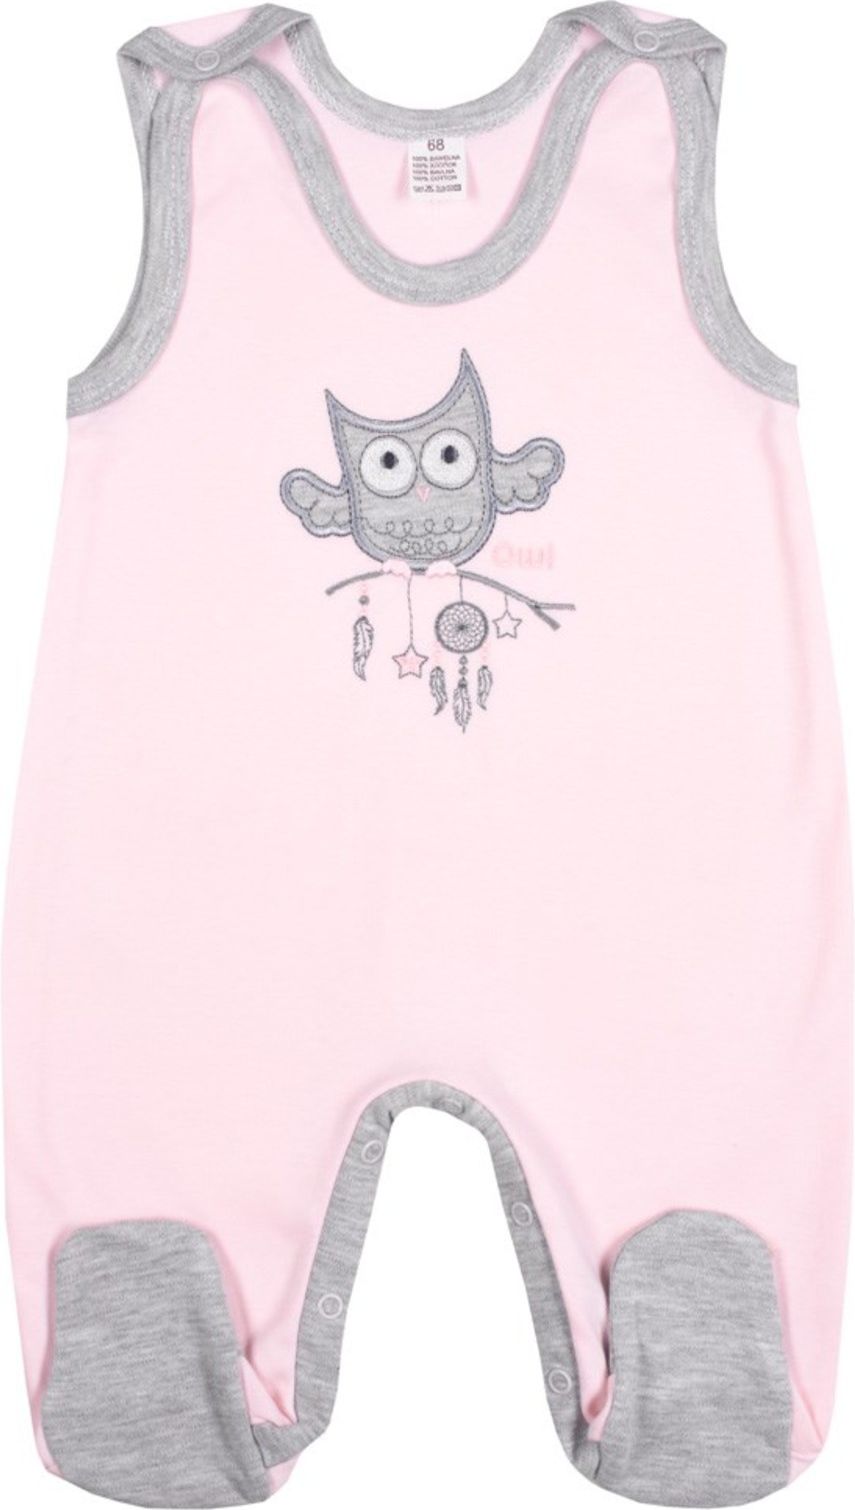 Kojenecké dupačky New Baby Owl růžové - Kojenecké dupačky New Baby Owl růžové - obrázek 1